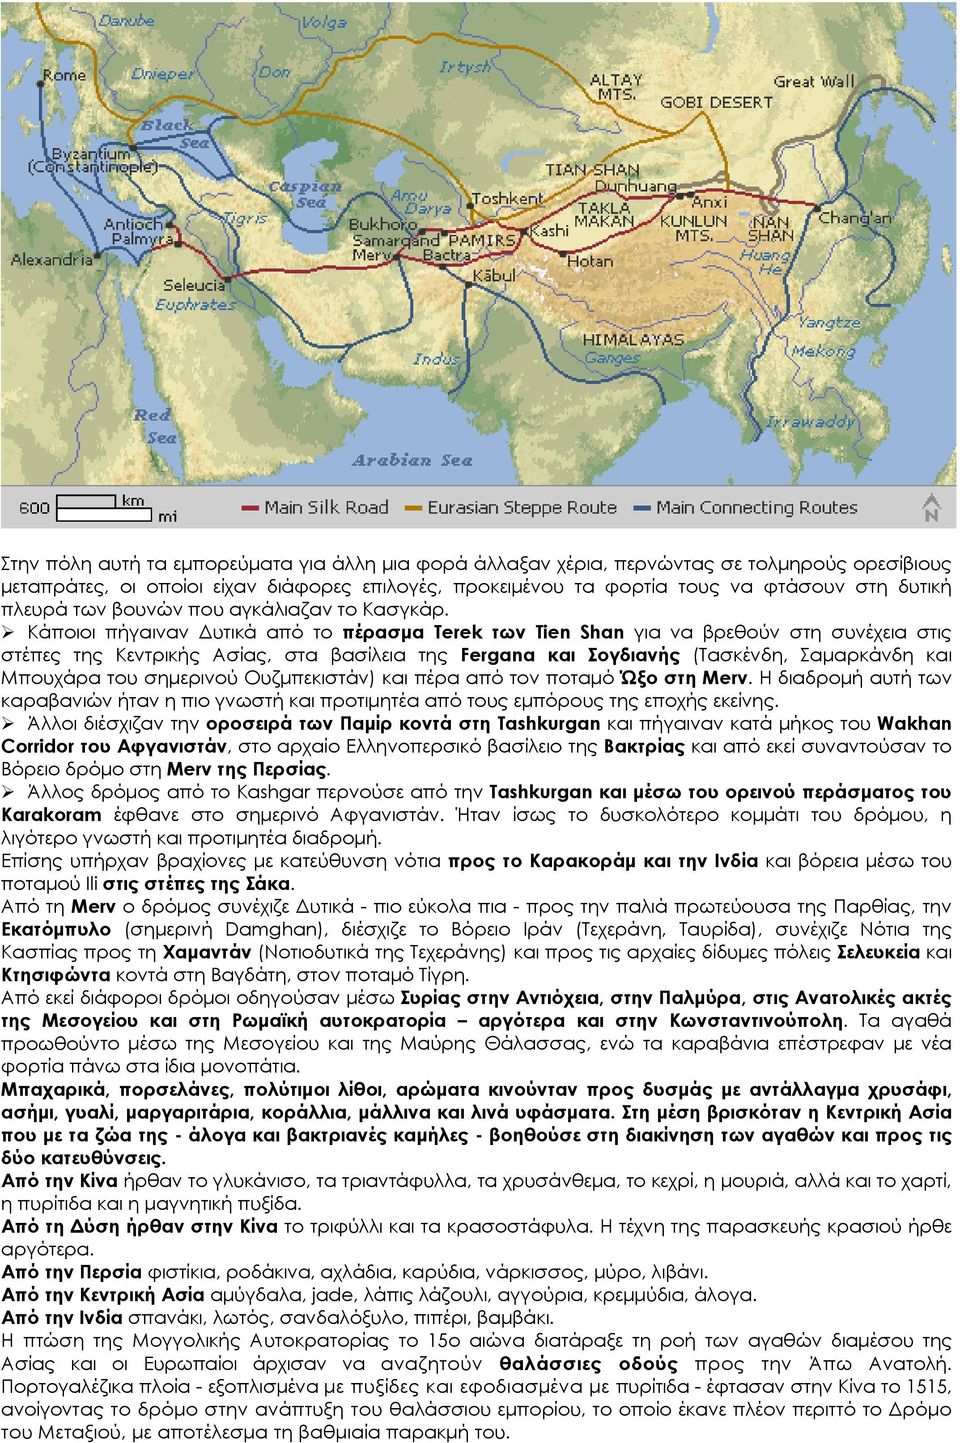 Κάποιοι πήγαιναν Δυτικά από το πέρασμα Terek των Tien Shan για να βρεθούν στη συνέχεια στις στέπες της Κεντρικής Ασίας, στα βασίλεια της Fergana και Σογδιανής (Τασκένδη, Σαμαρκάνδη και Μπουχάρα του